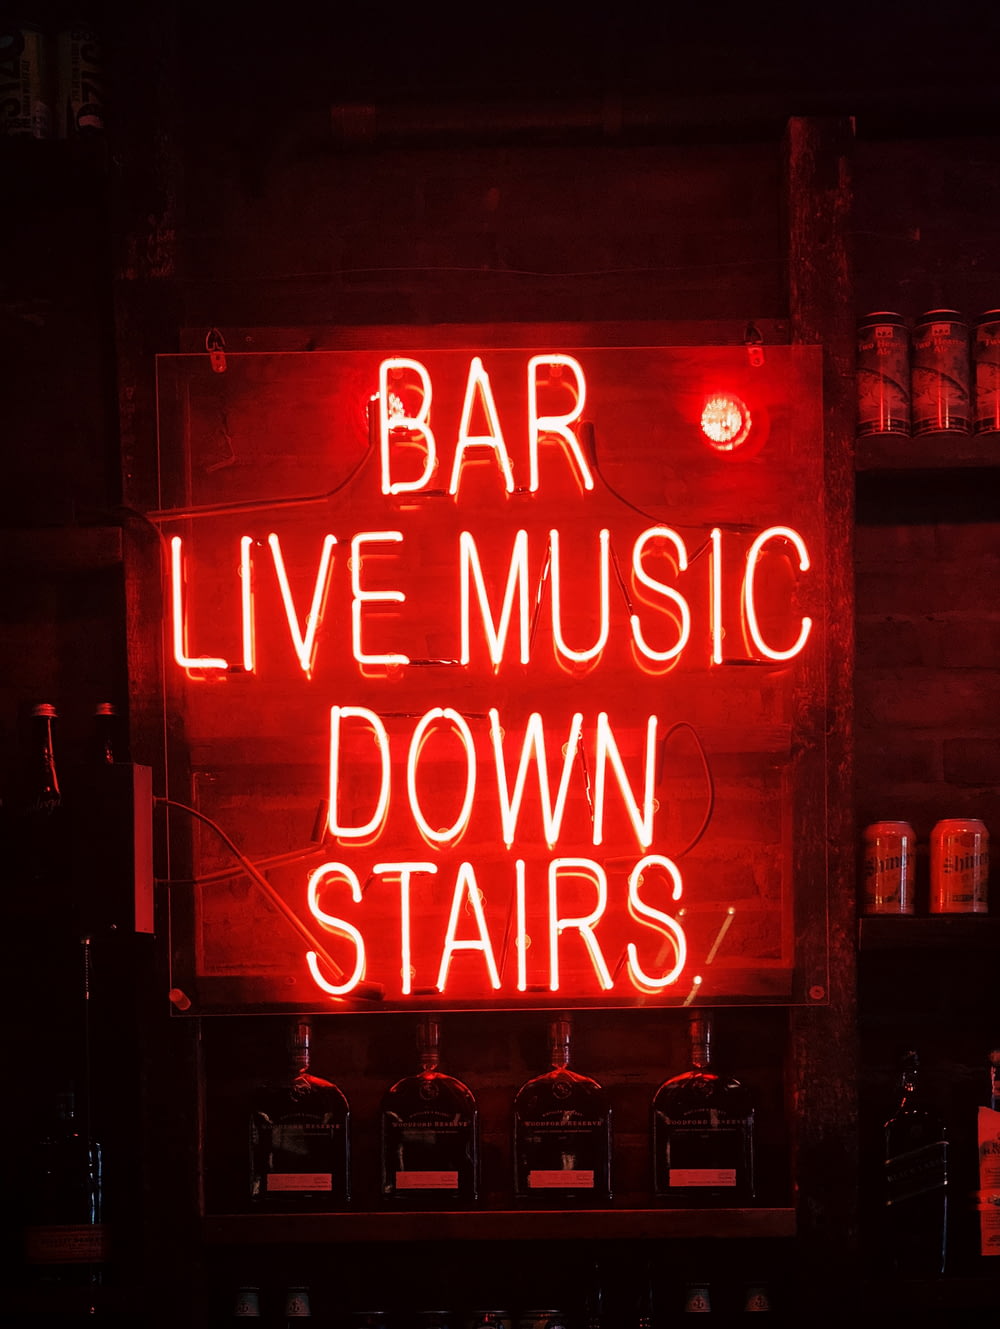 Bar Musique live en bas des escaliers Signalisation lumineuse au néon